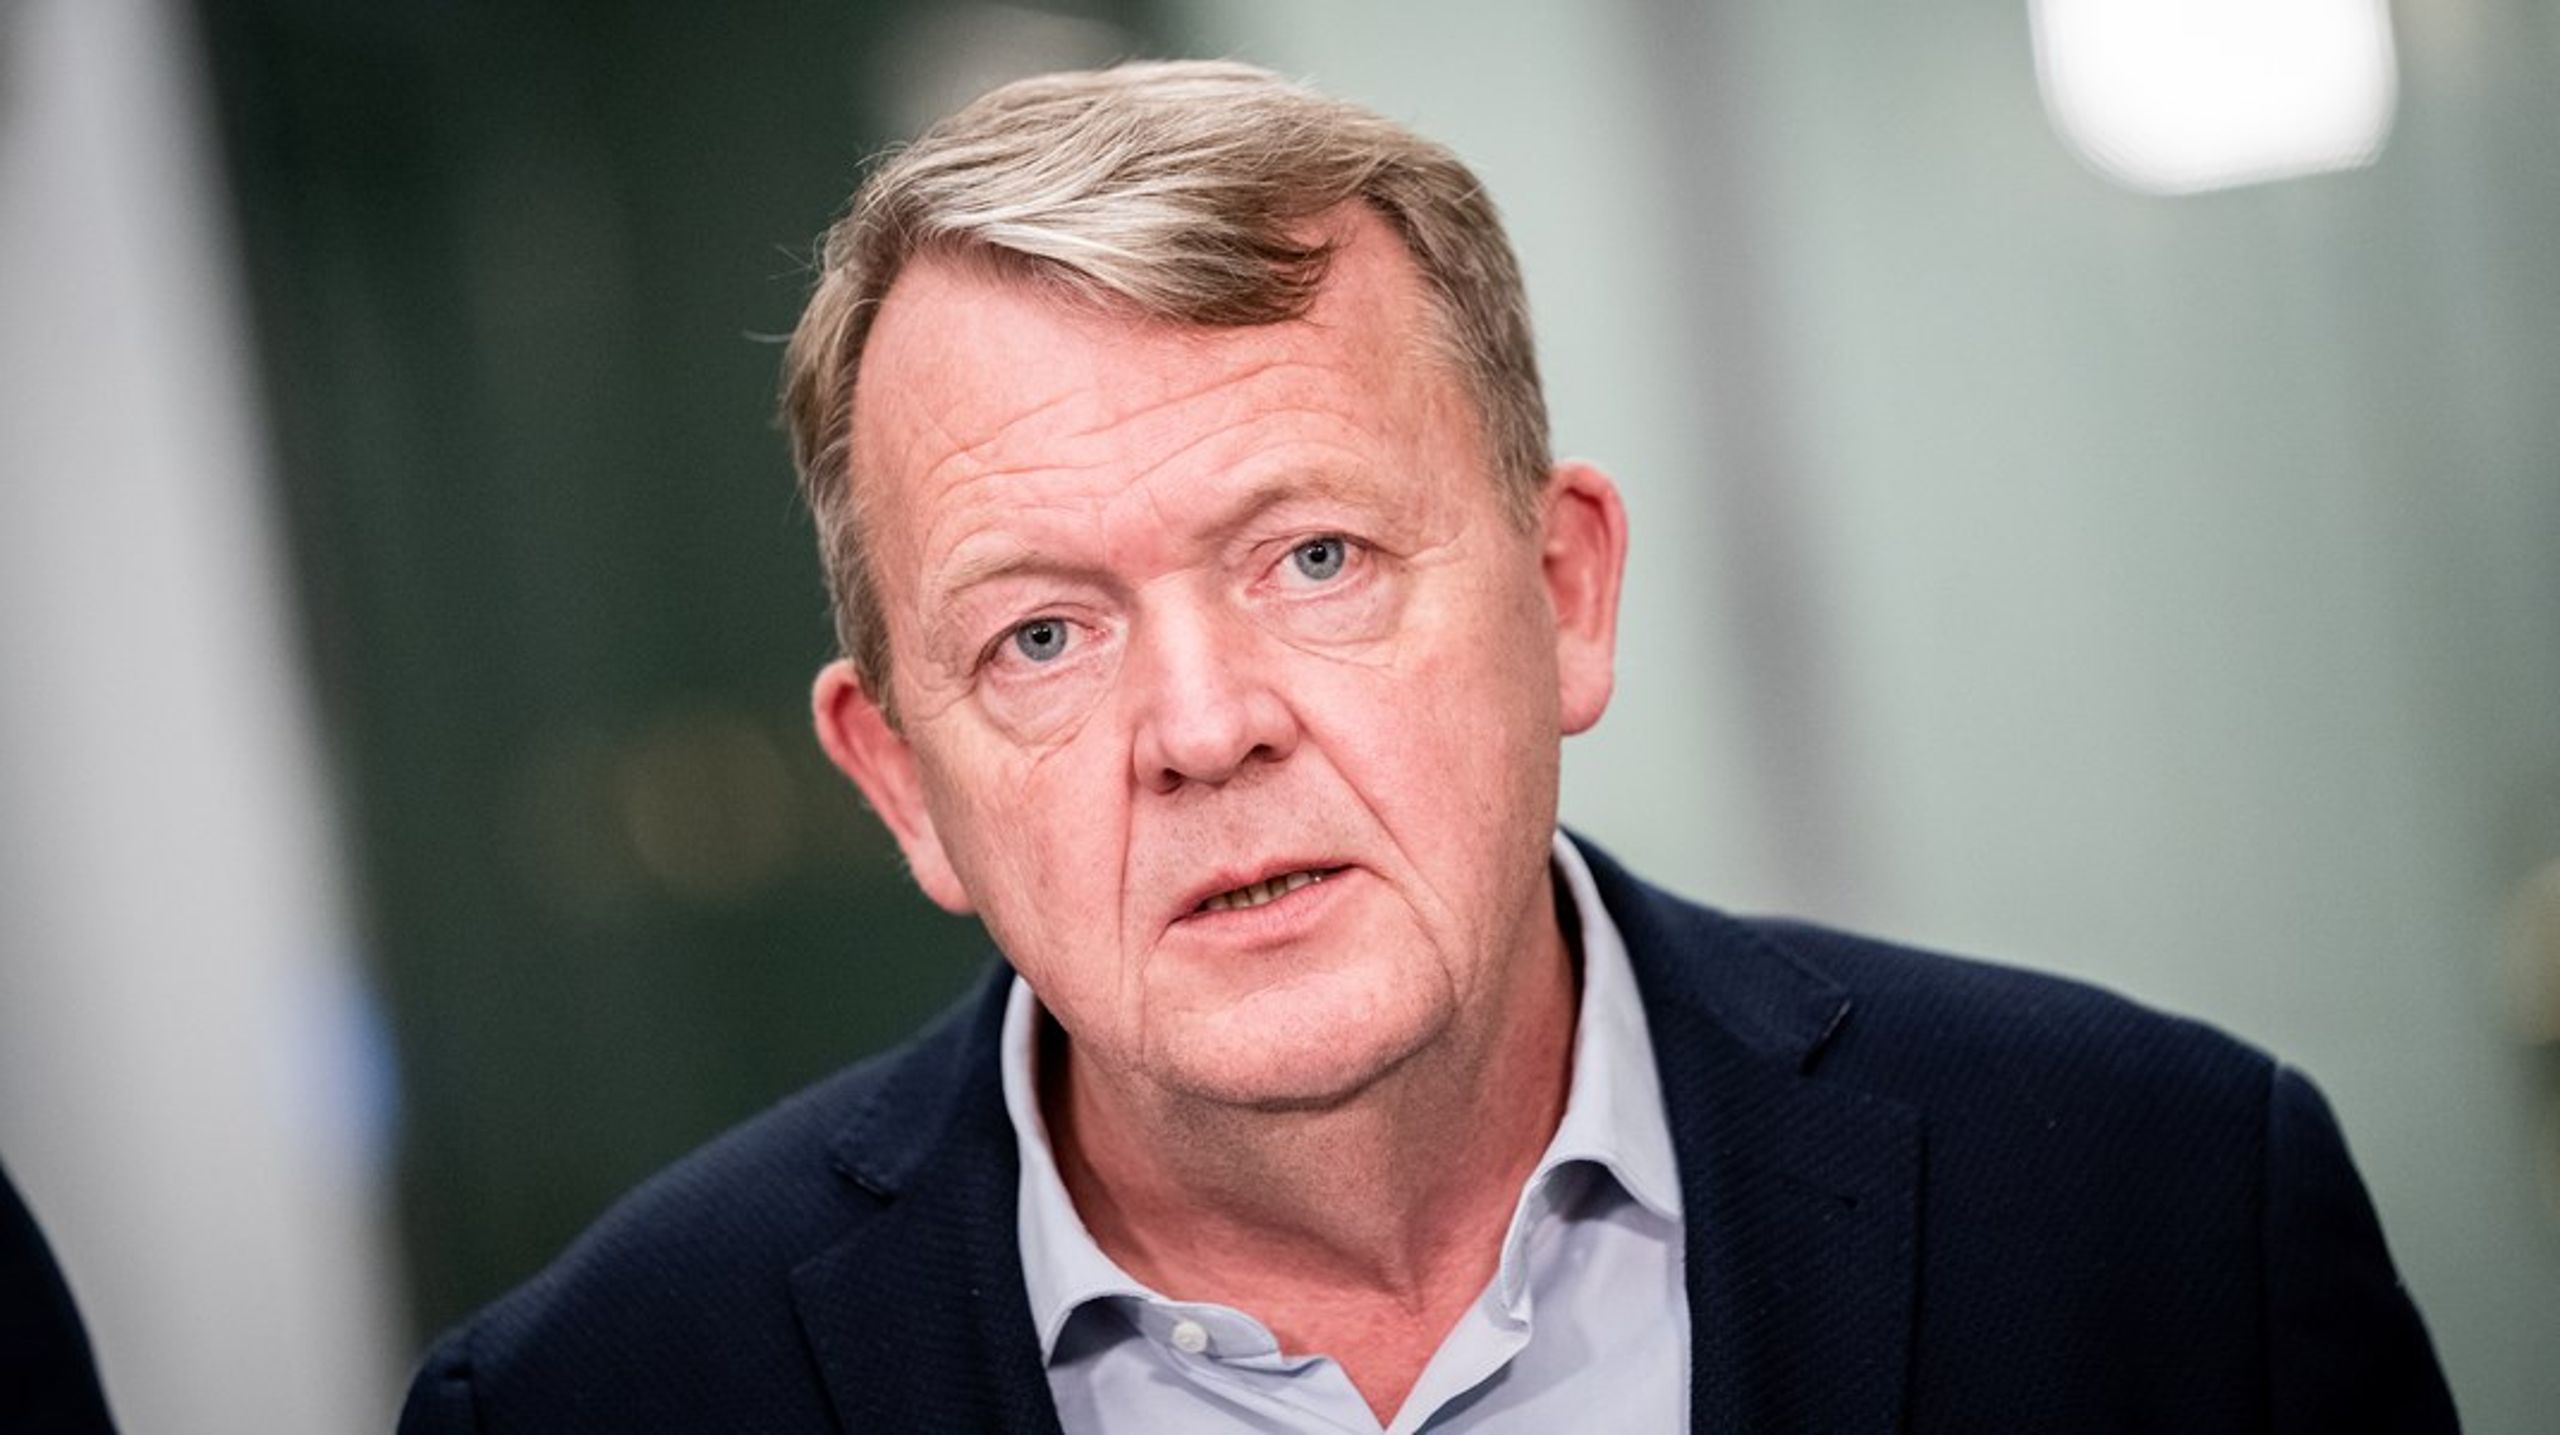 Udenrigsminister Lars Løkke Rasmussen får endnu en særlig rådgiver i Morten E. G. Jørgensen.